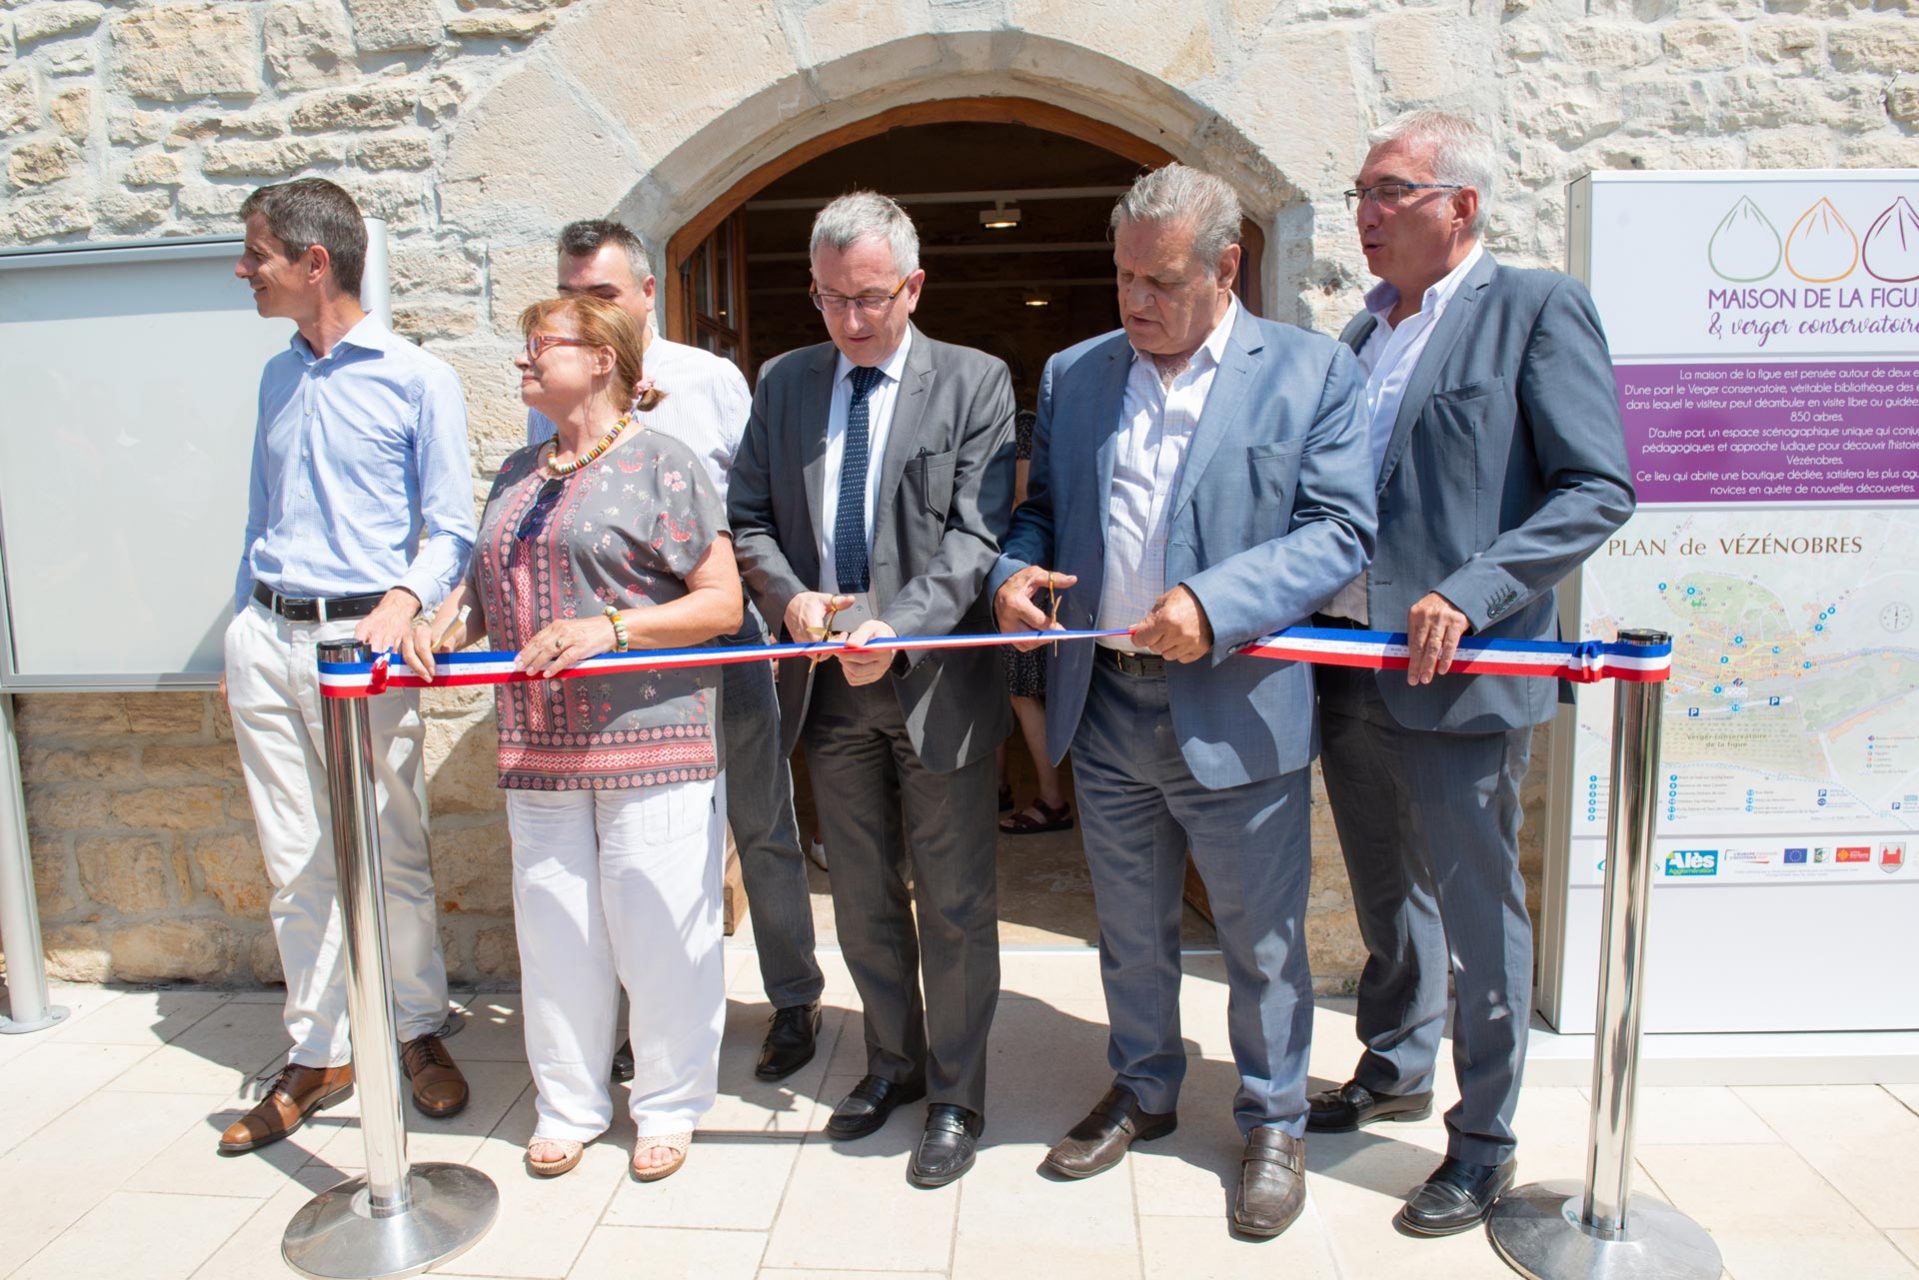 C'est en présence de Max Roustan, Président d'Alès Agglomération, que la Maison de la Figue a ouvert ses portes au public.